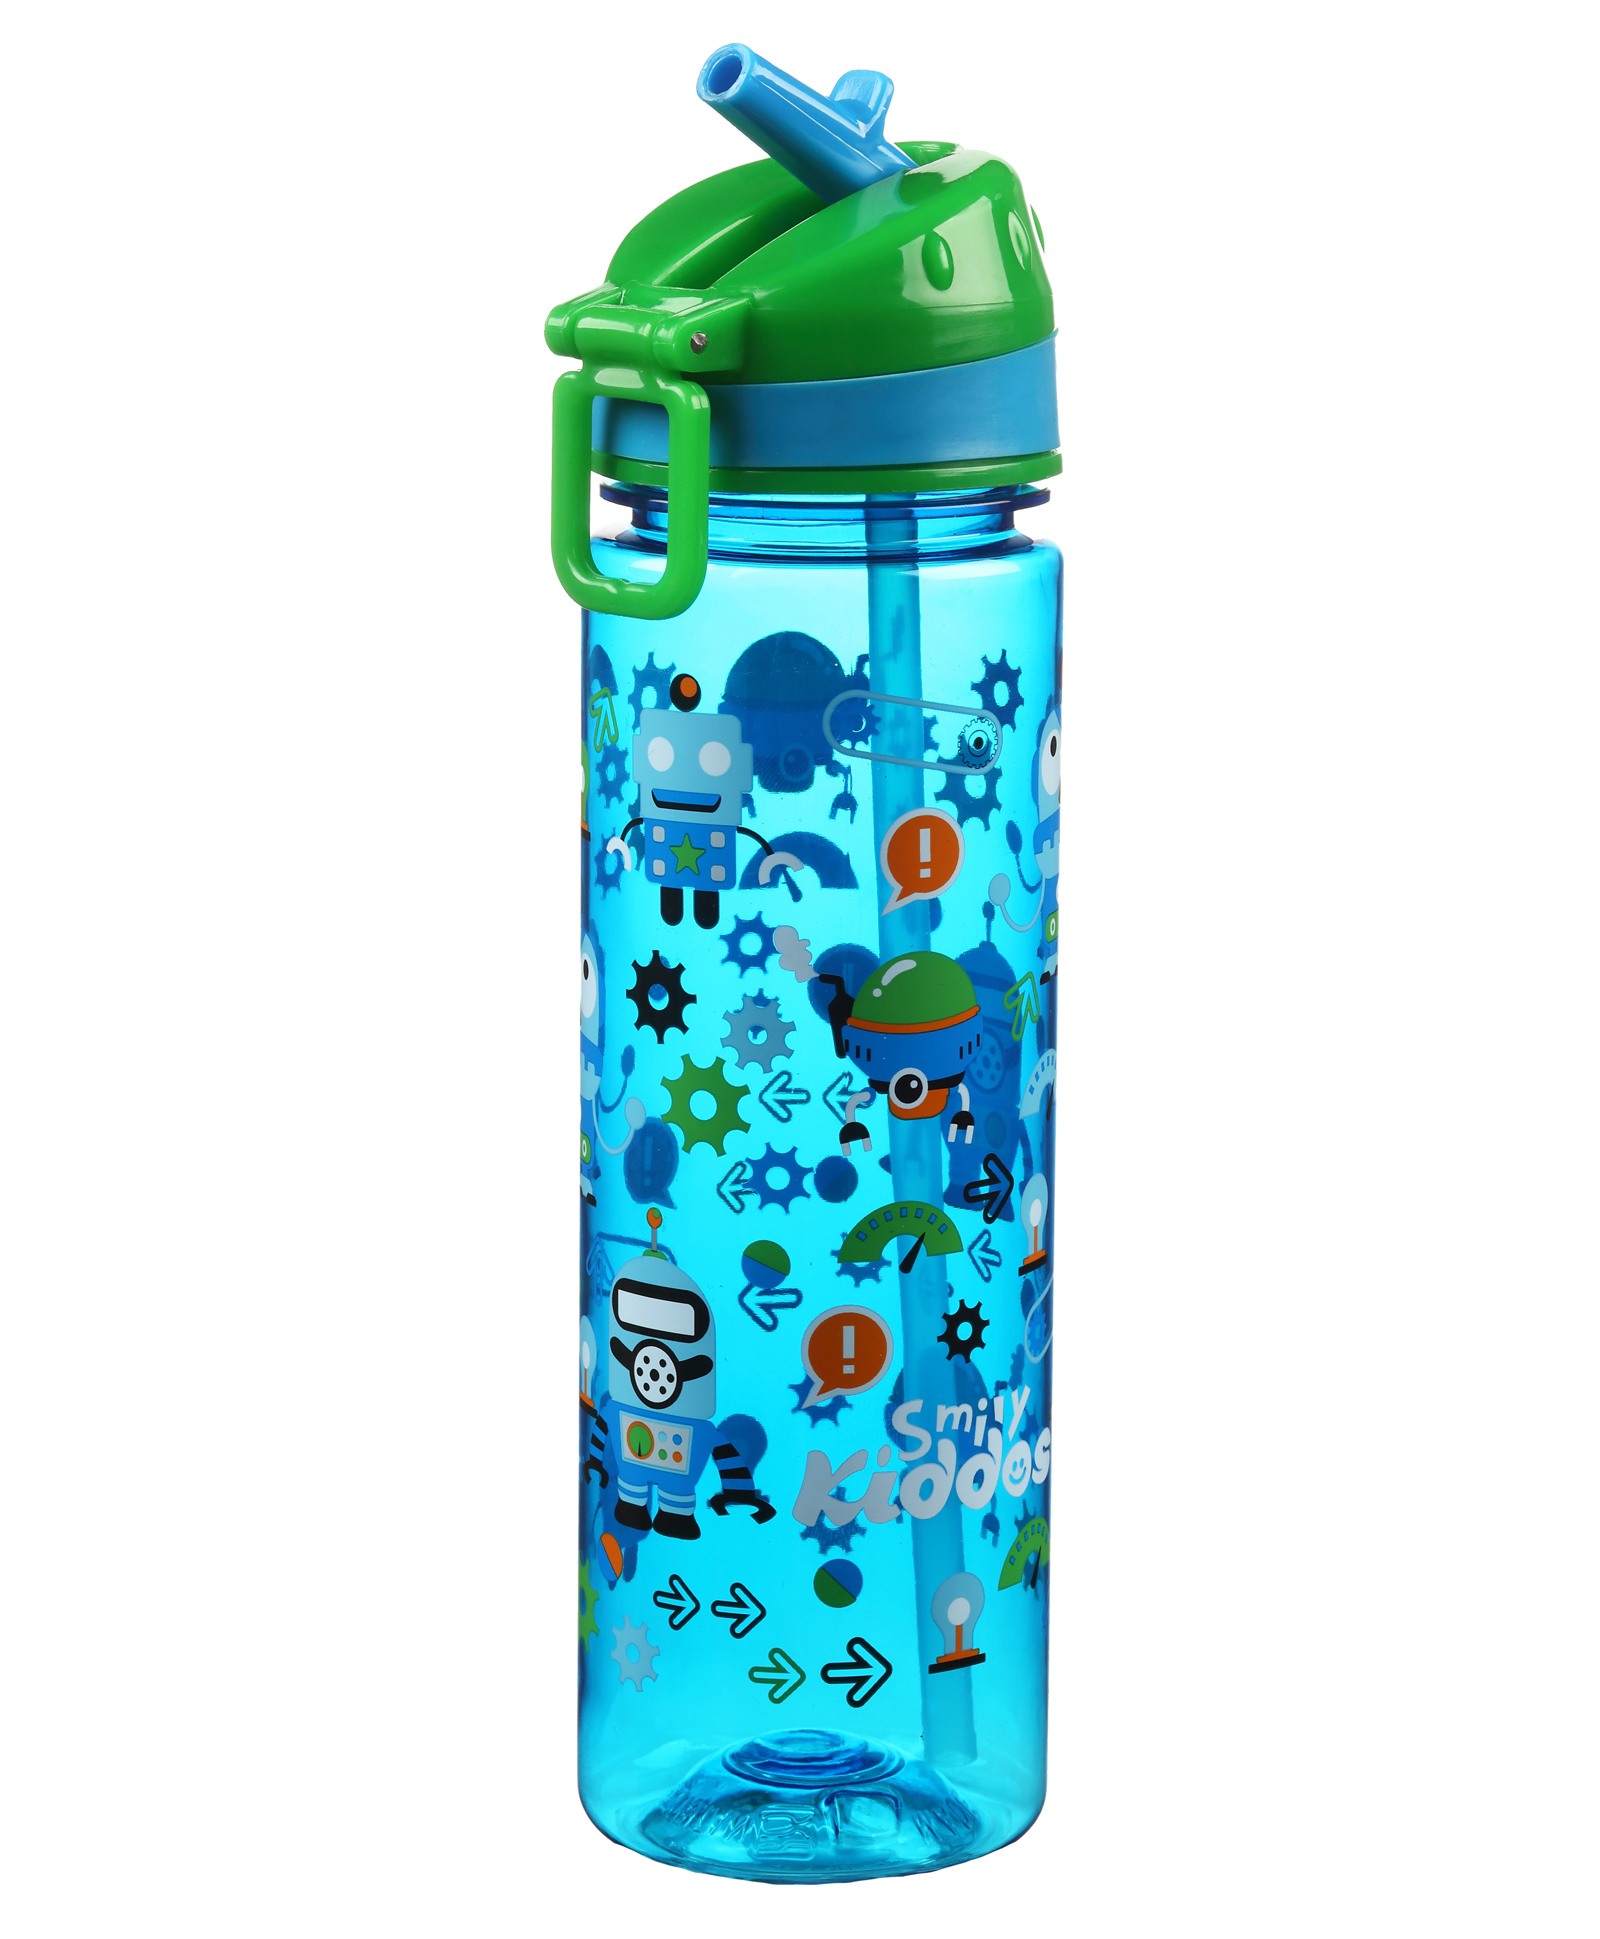 Smily Kiddos Fancy Sipper Bottle - Blue Online in UAE, Buy at Best ...